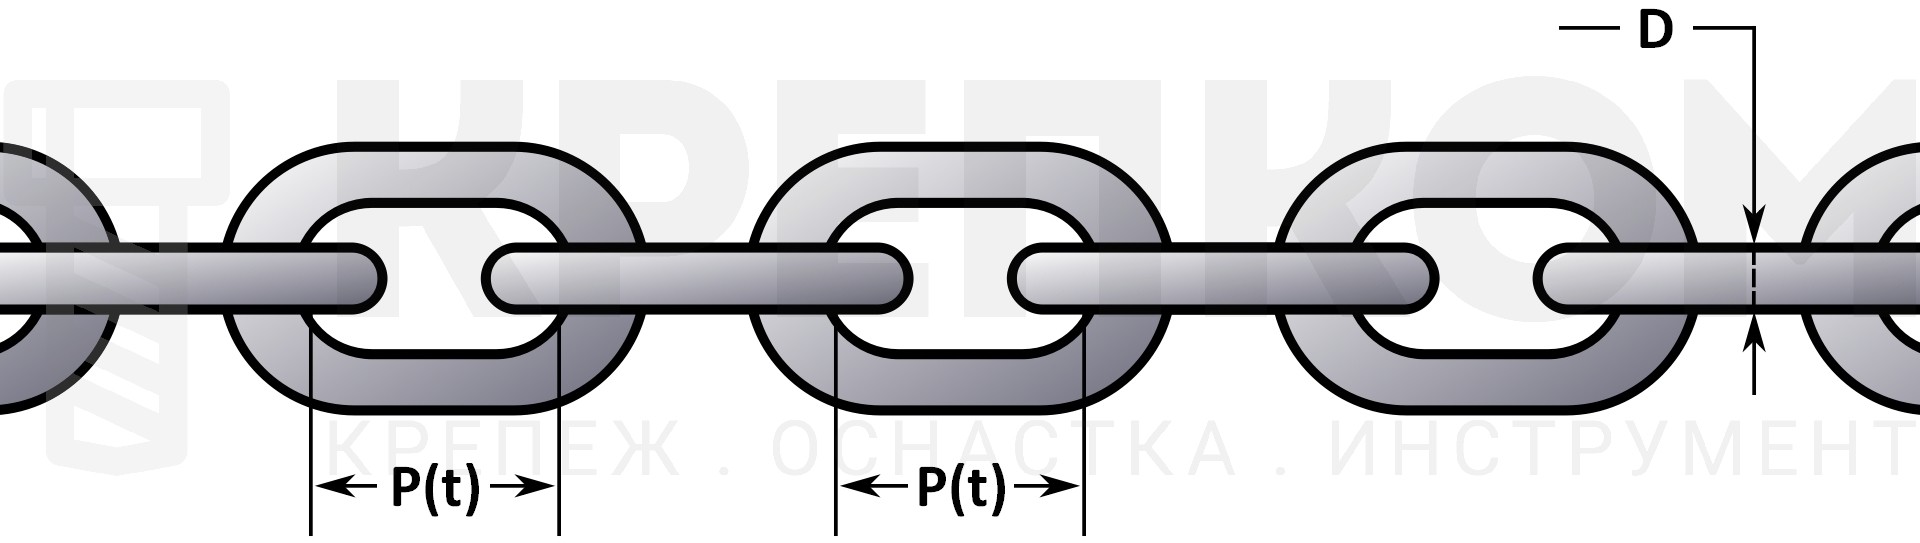 Шаг и калибр (размер) цепи на схеме